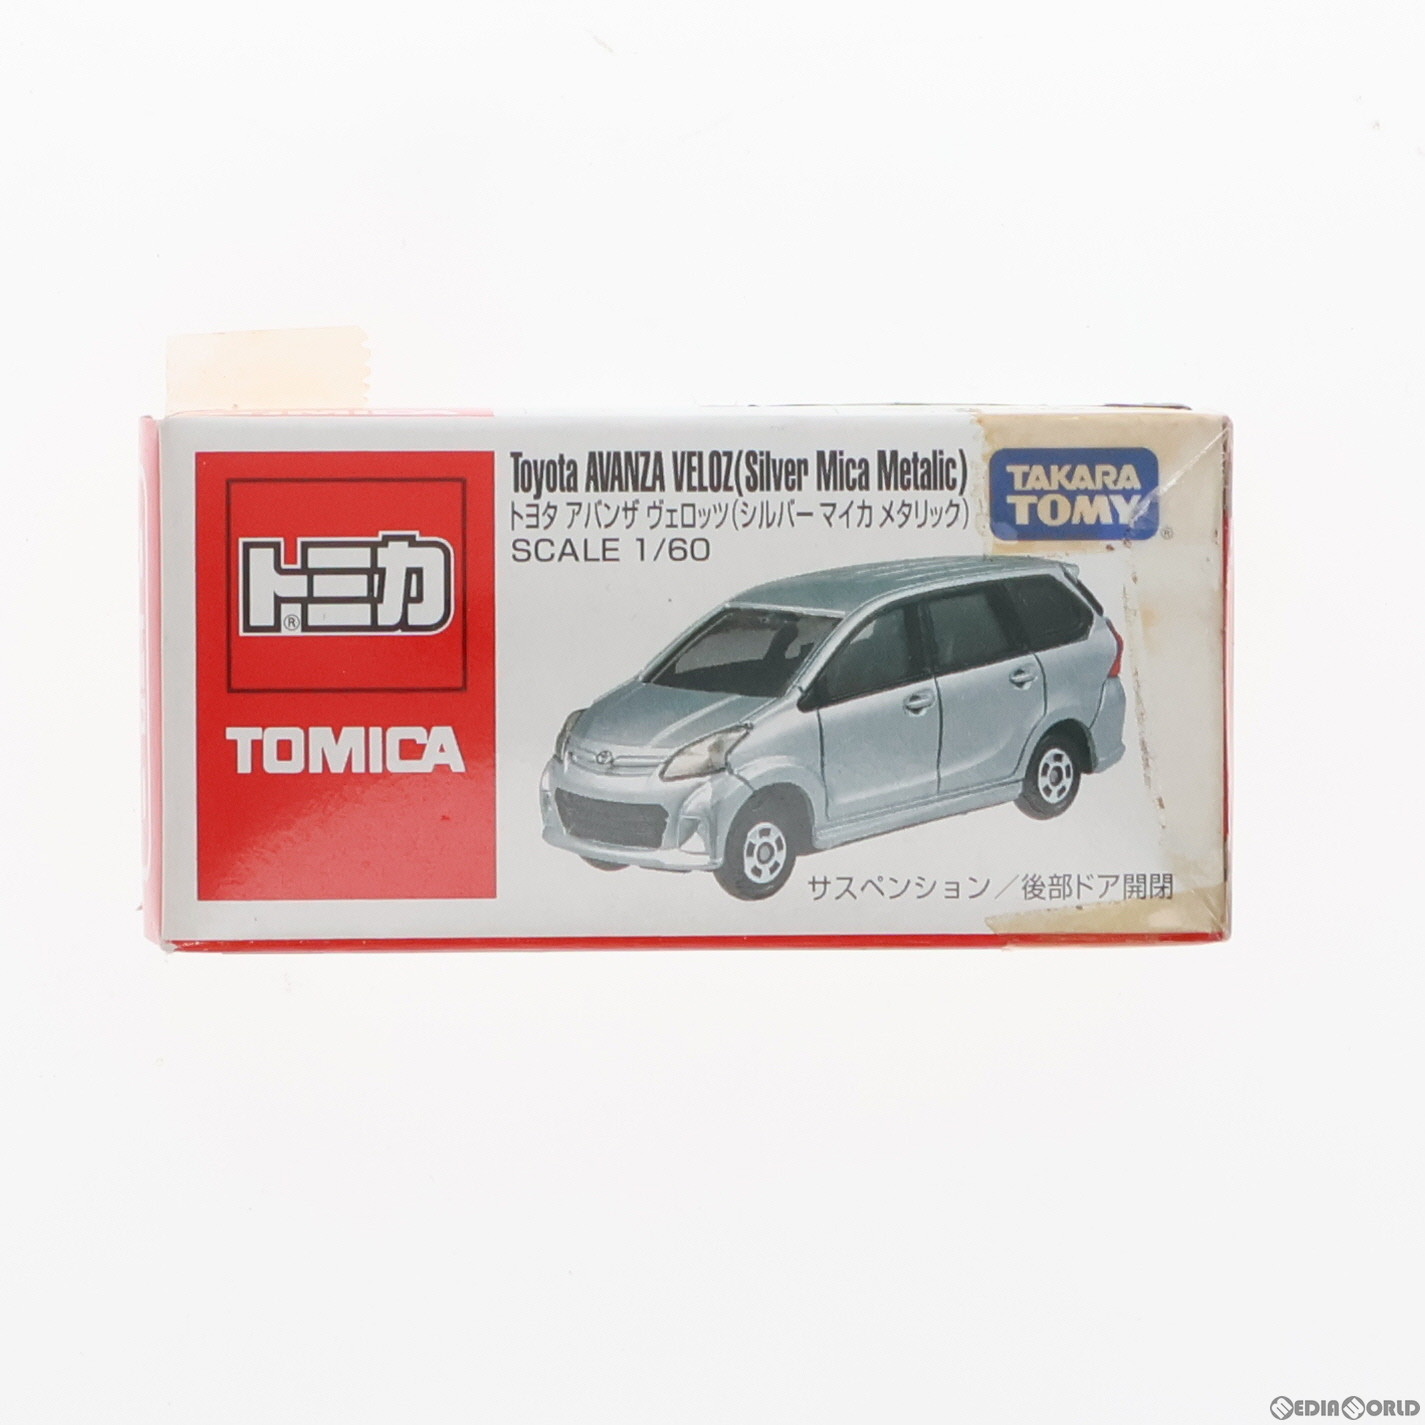 トミカ 1/60 トヨタ アバンザ ヴェロッツ(シルバーマイカメタリック/赤箱/タカラトミー/ベトナム製/箱側面英語表記) 完成品 ミニカー タカラトミー(20140331)